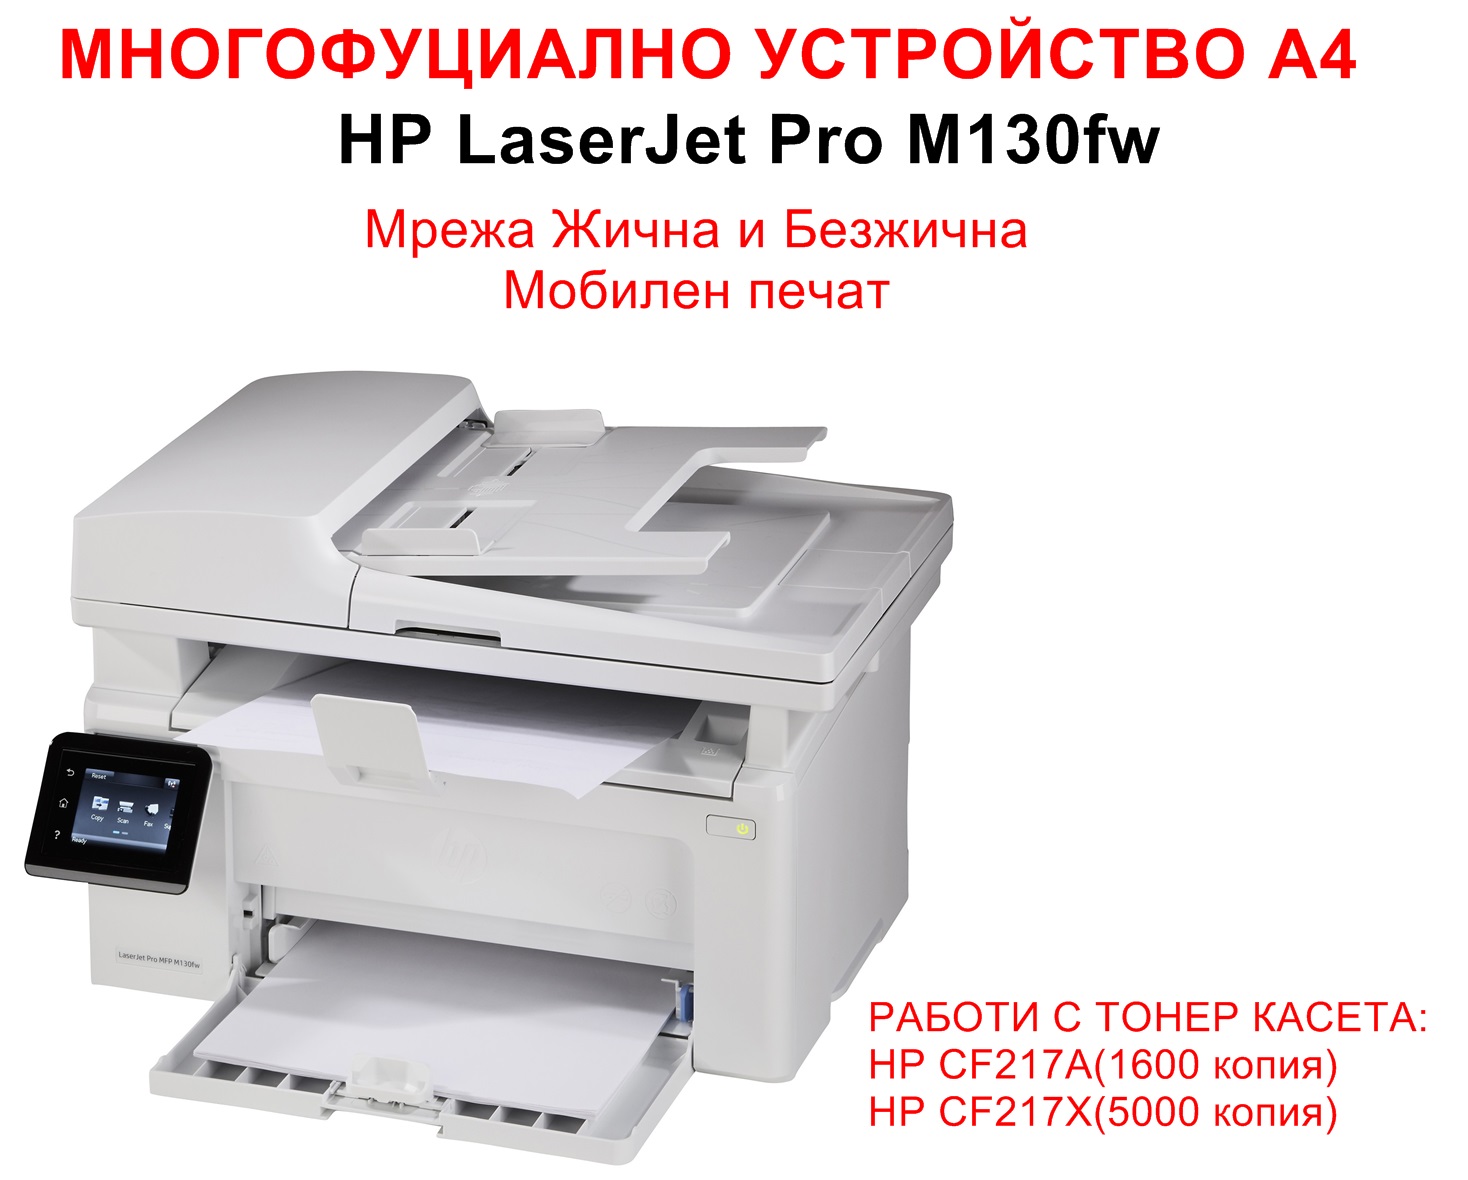 All-in-One Printer HP LaserJet Pro M130fw